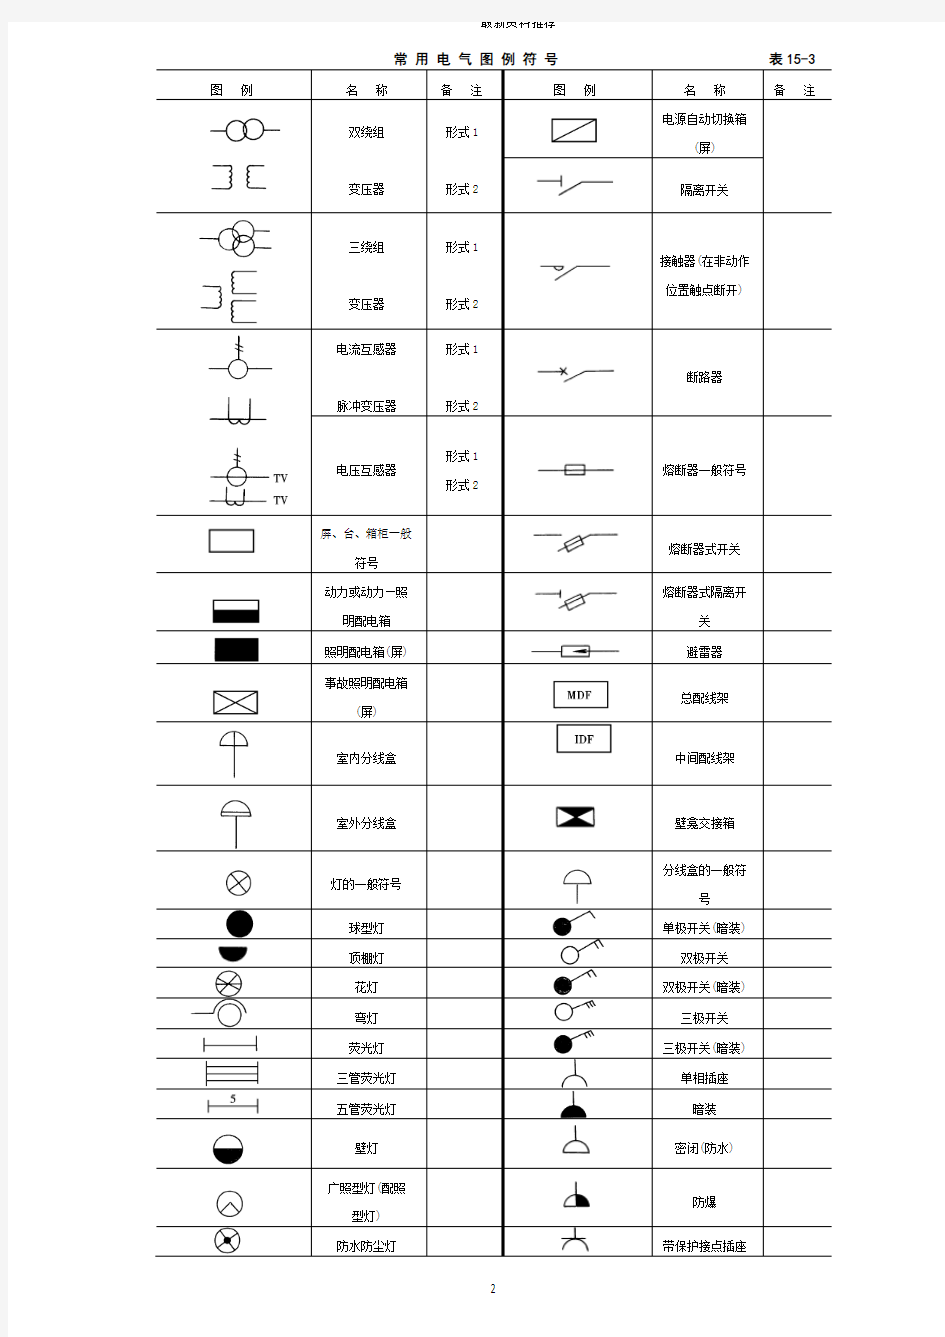 建筑电气施工图实例图解(图例、符号、含义)精编版